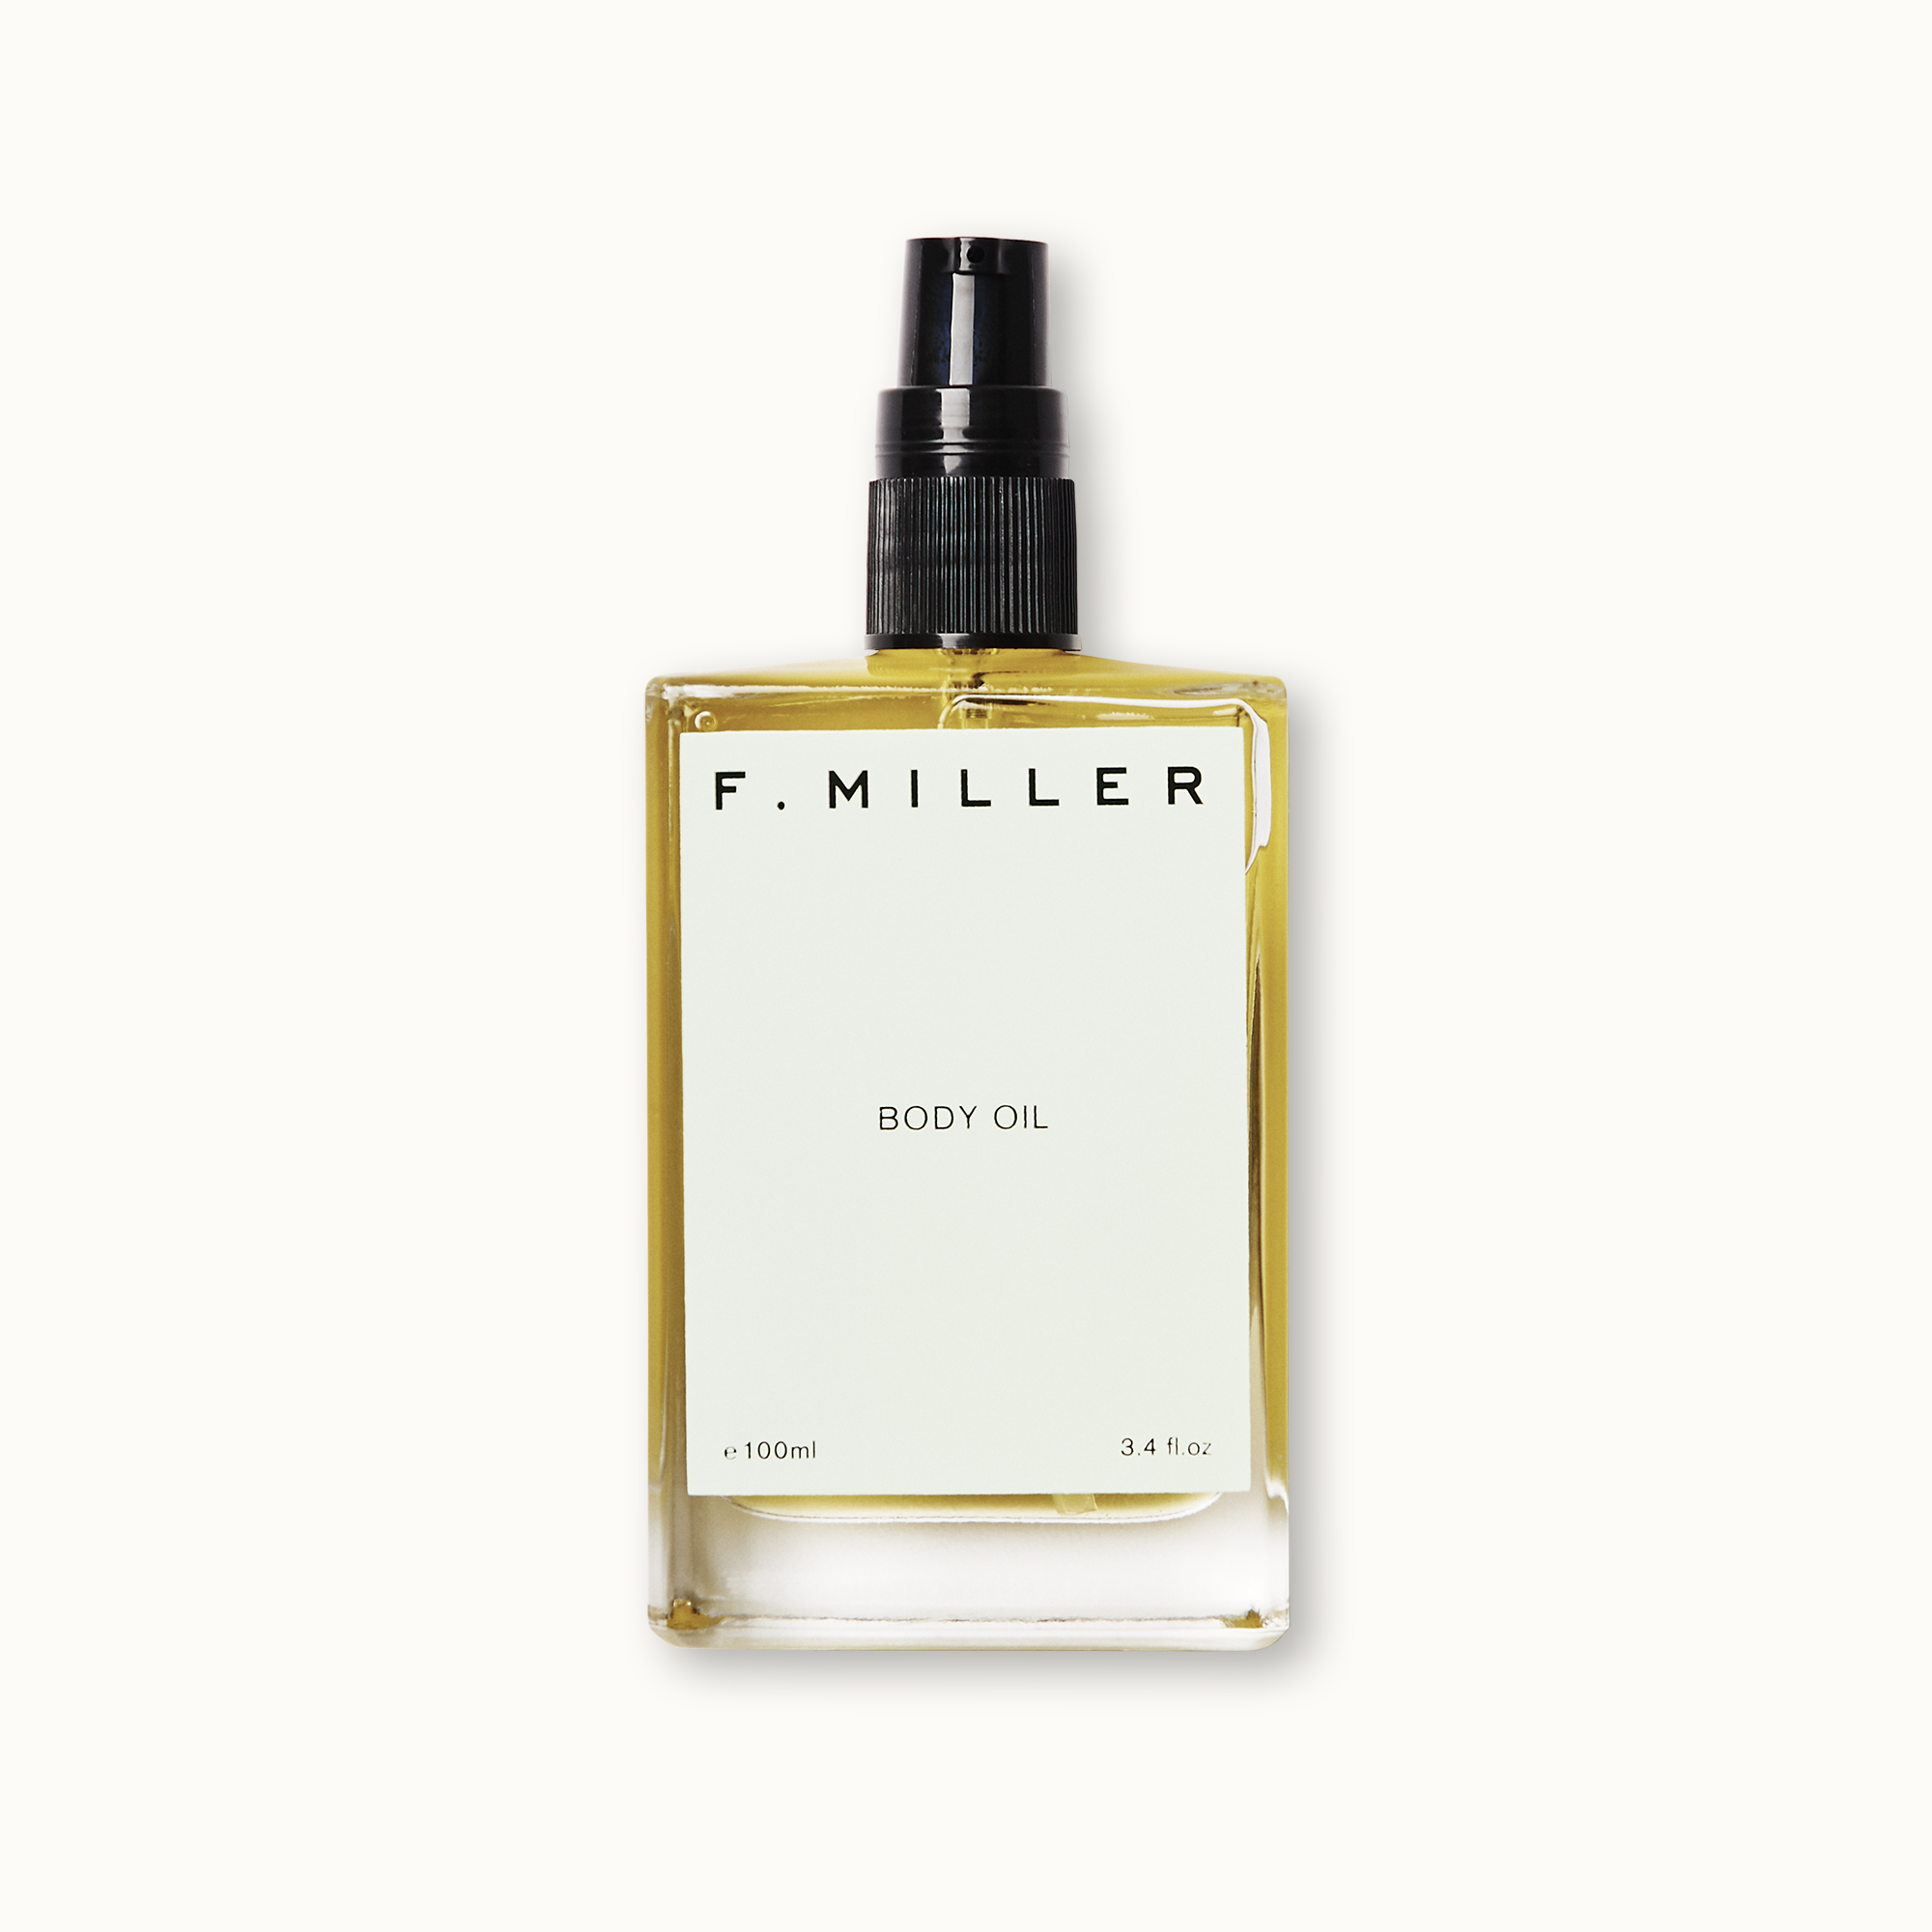 Body Oil ▫ F. MILLER